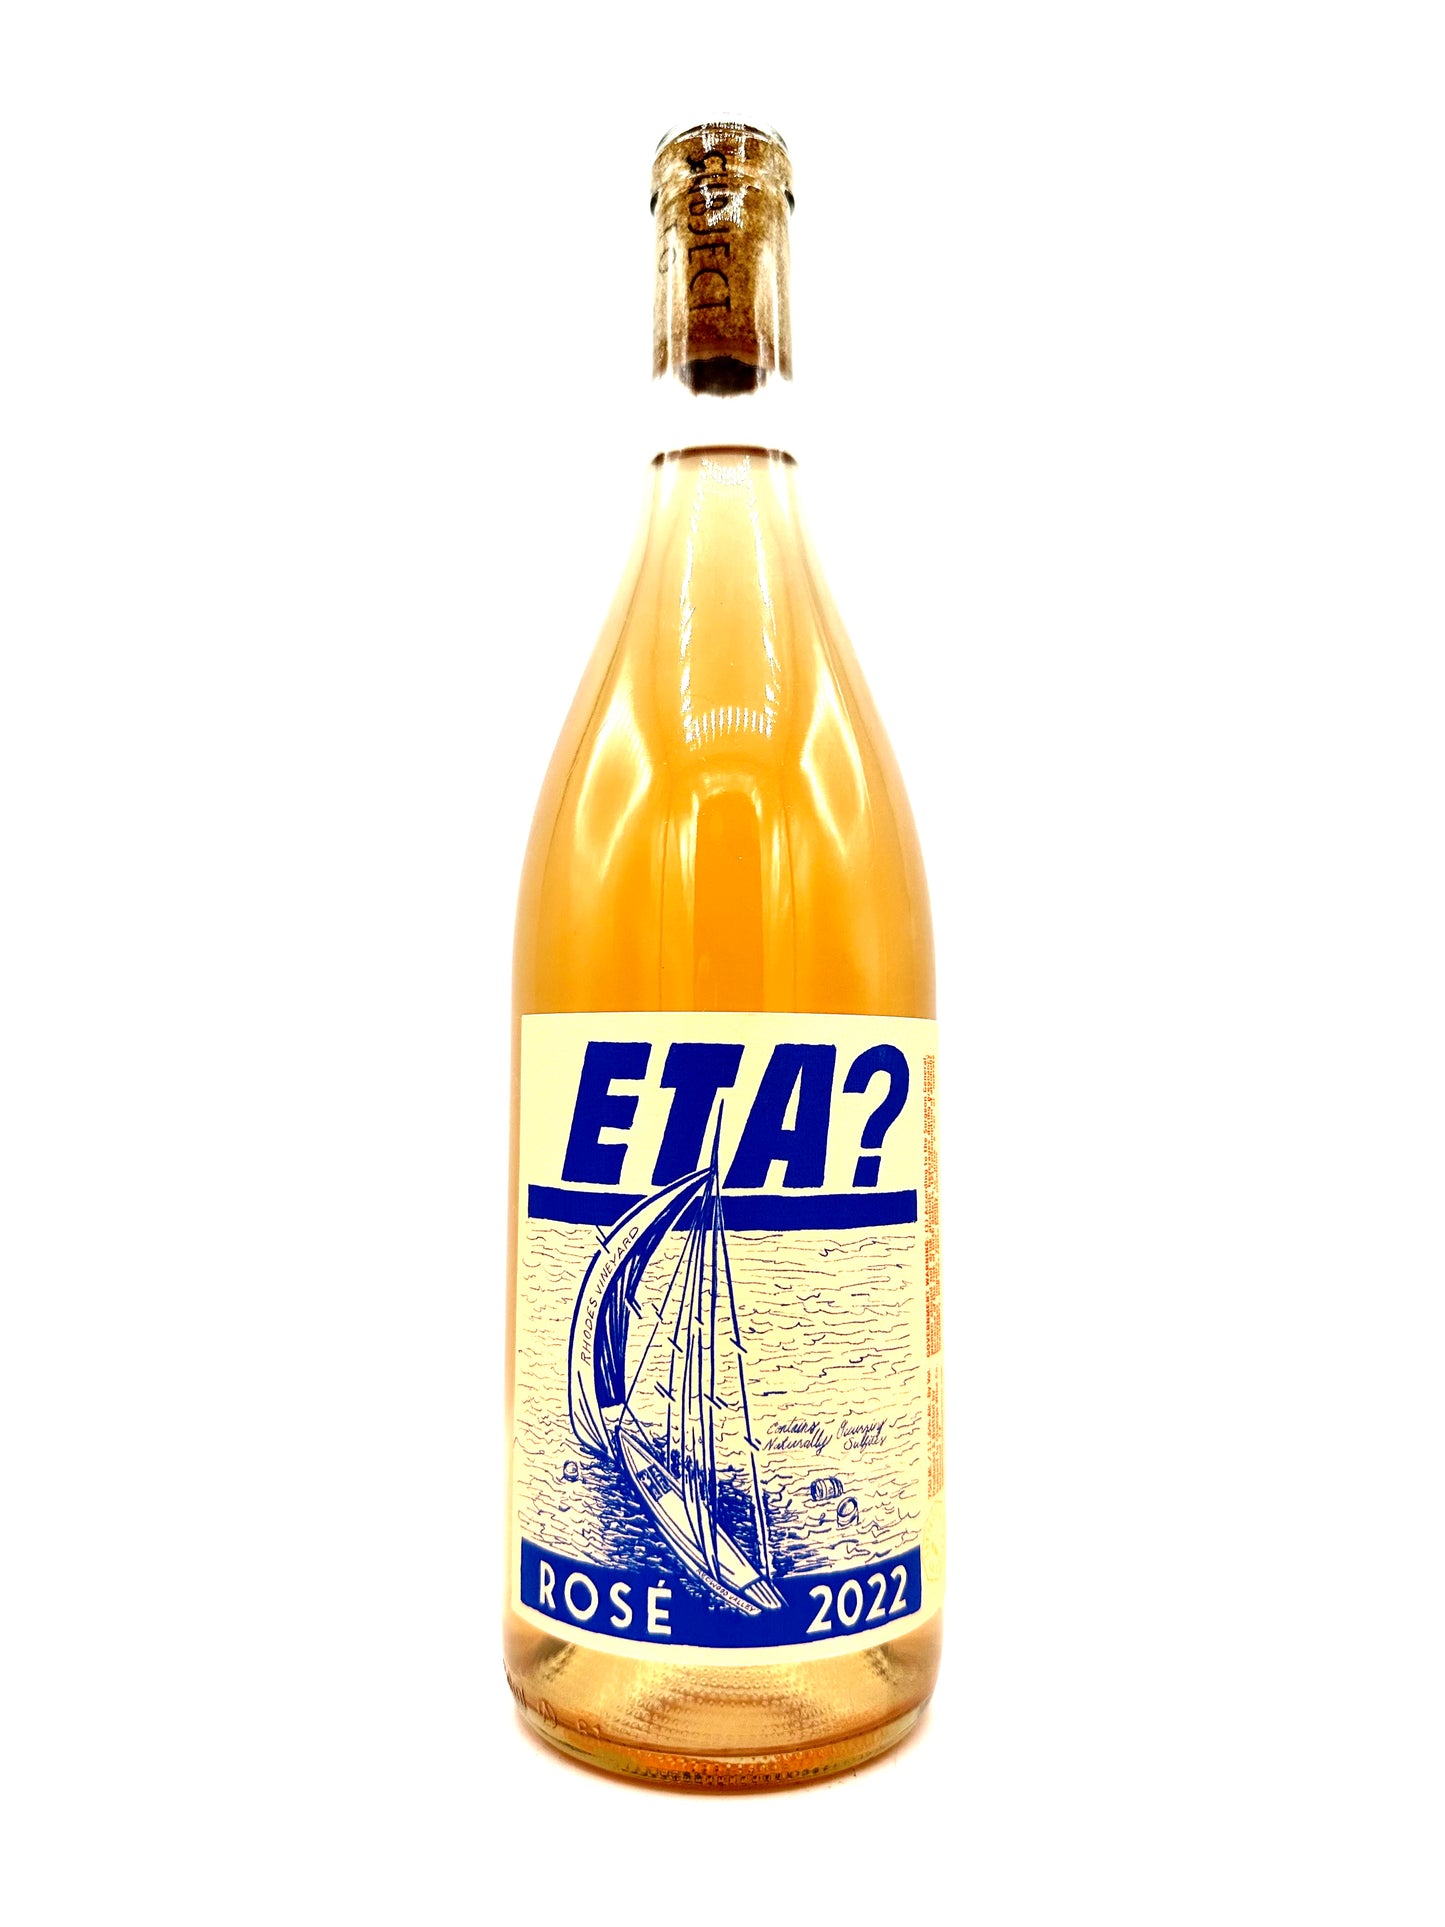 Subject to Change Wine Co. 'ETA?' Rosé 2022